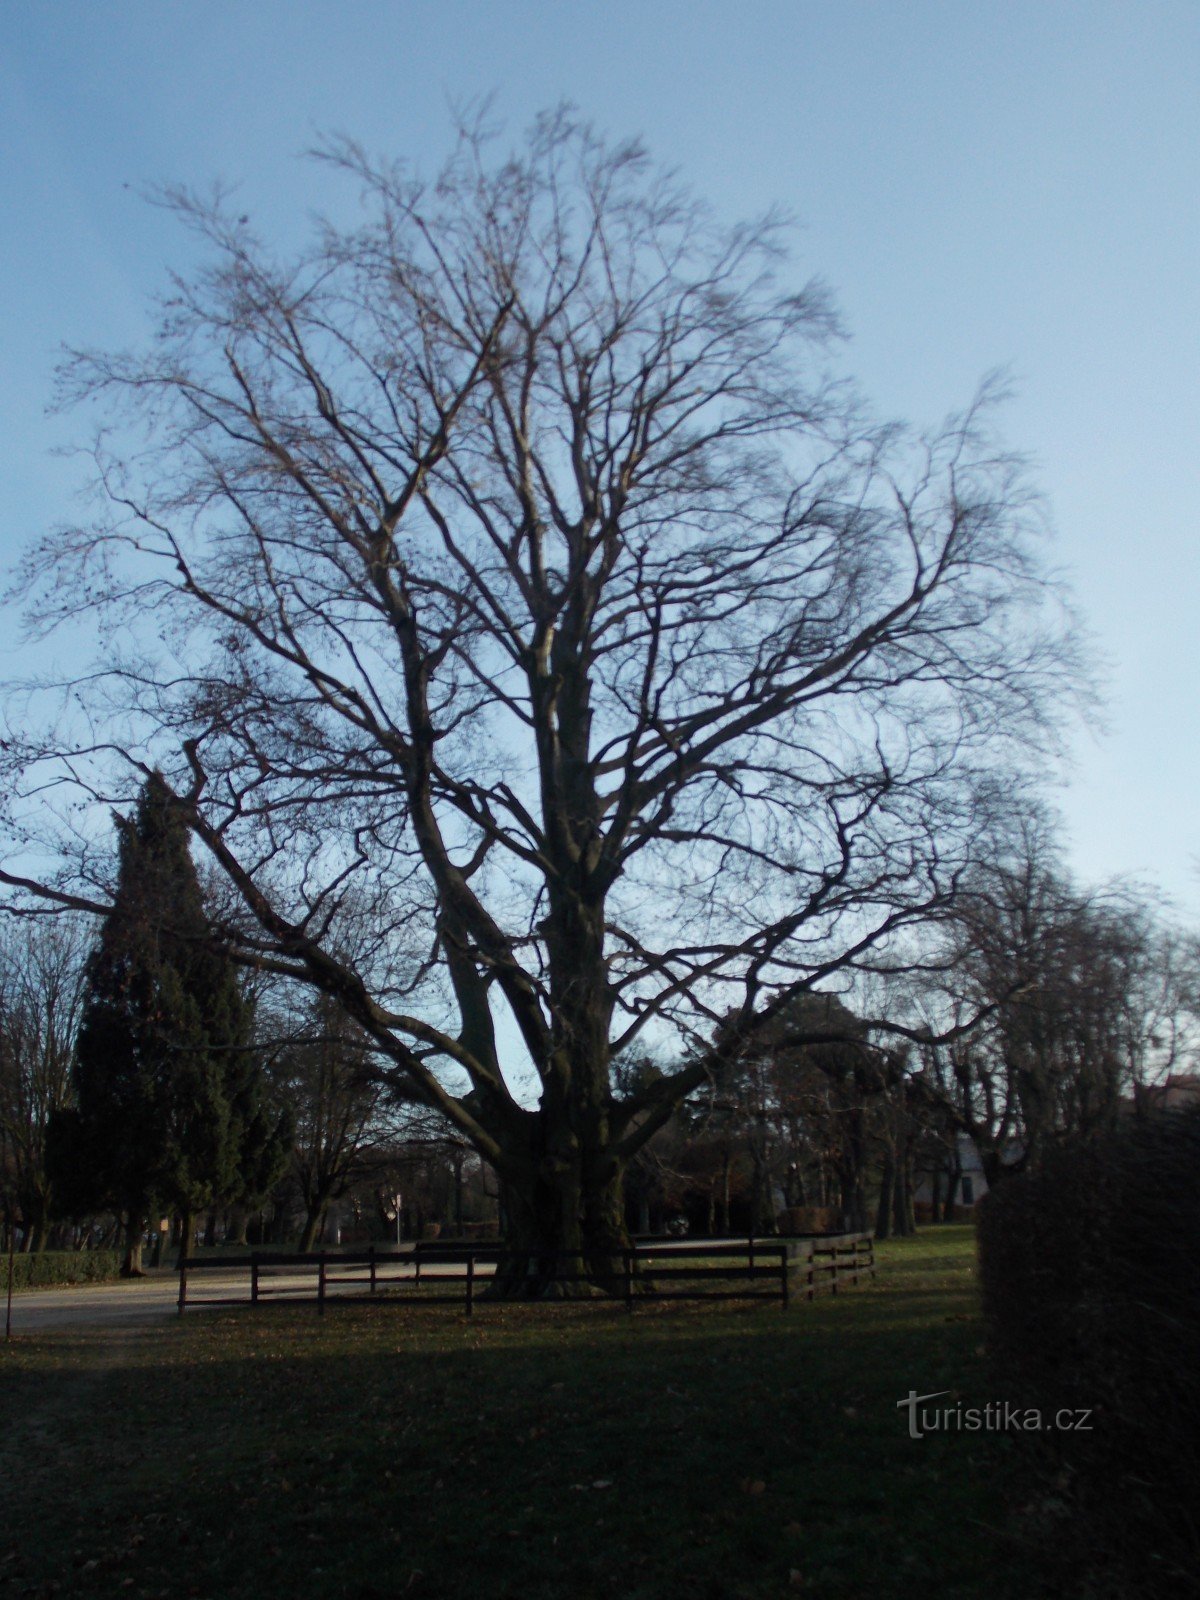 Árvore memorável em frente ao castelo em Holešov